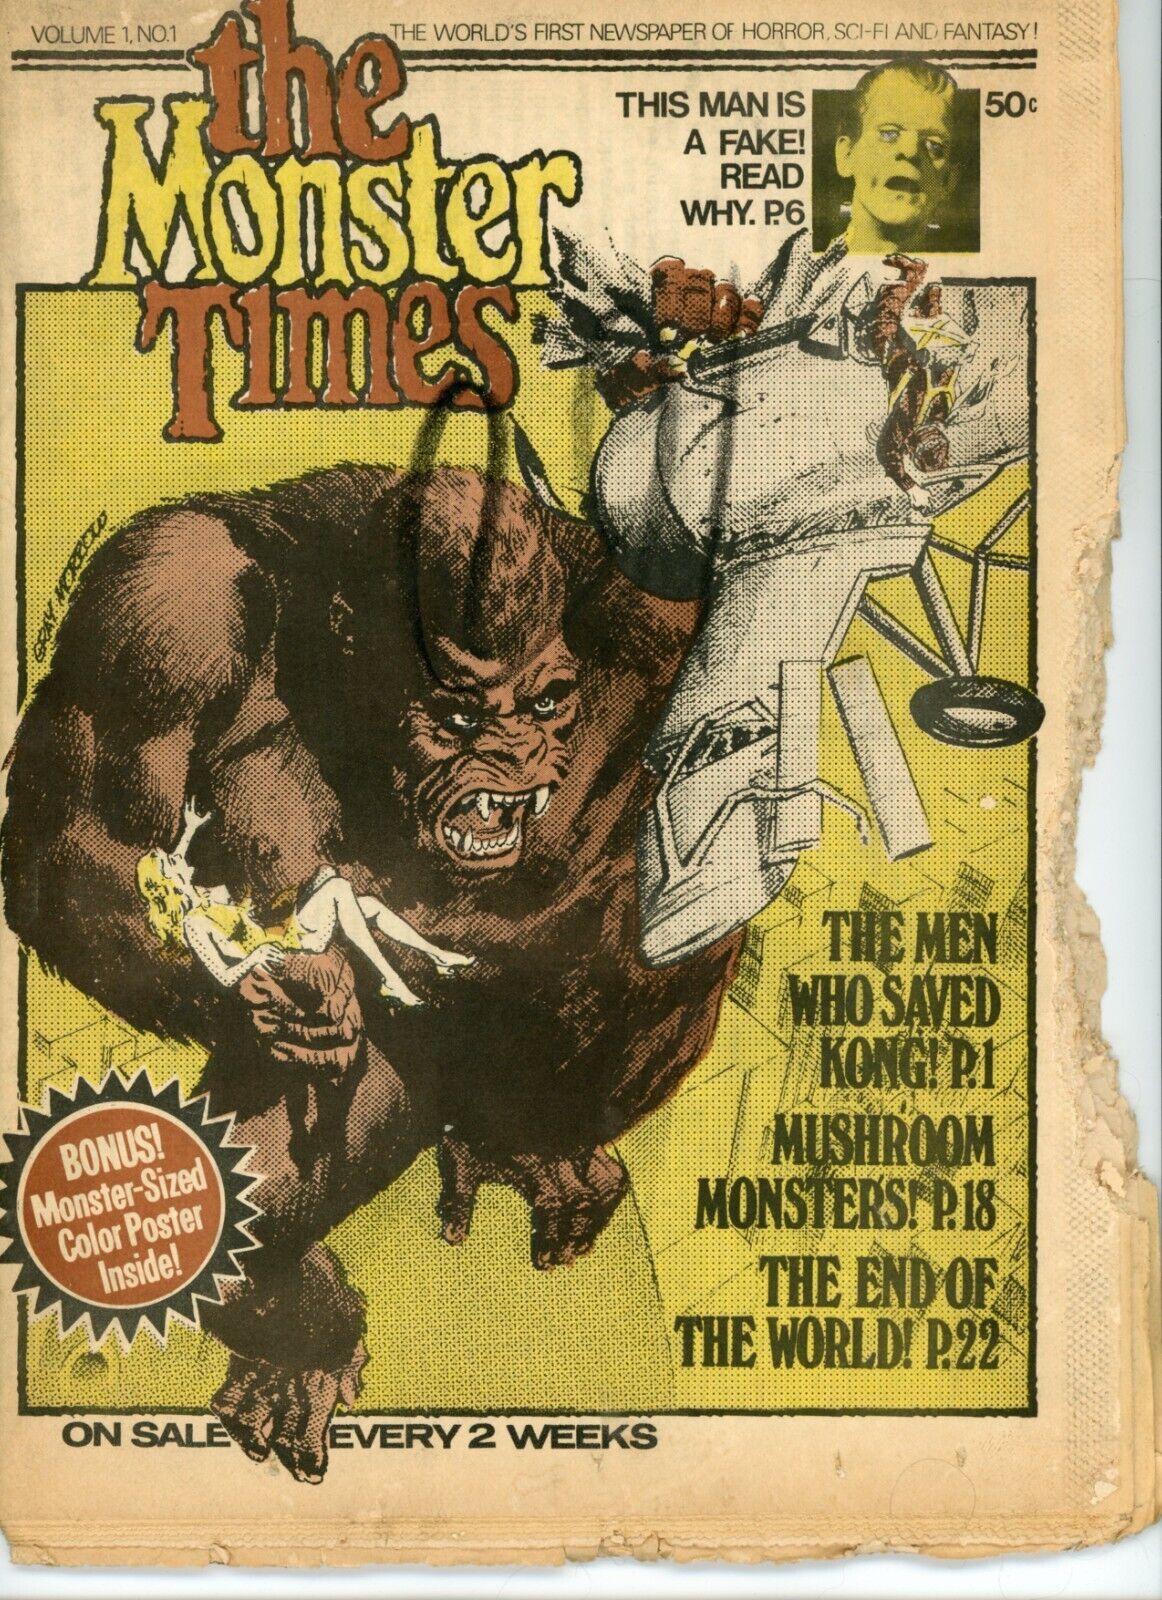 Monster Times 1 Poor 0.5 1972 Bronze Age Vampires Buck Rogers